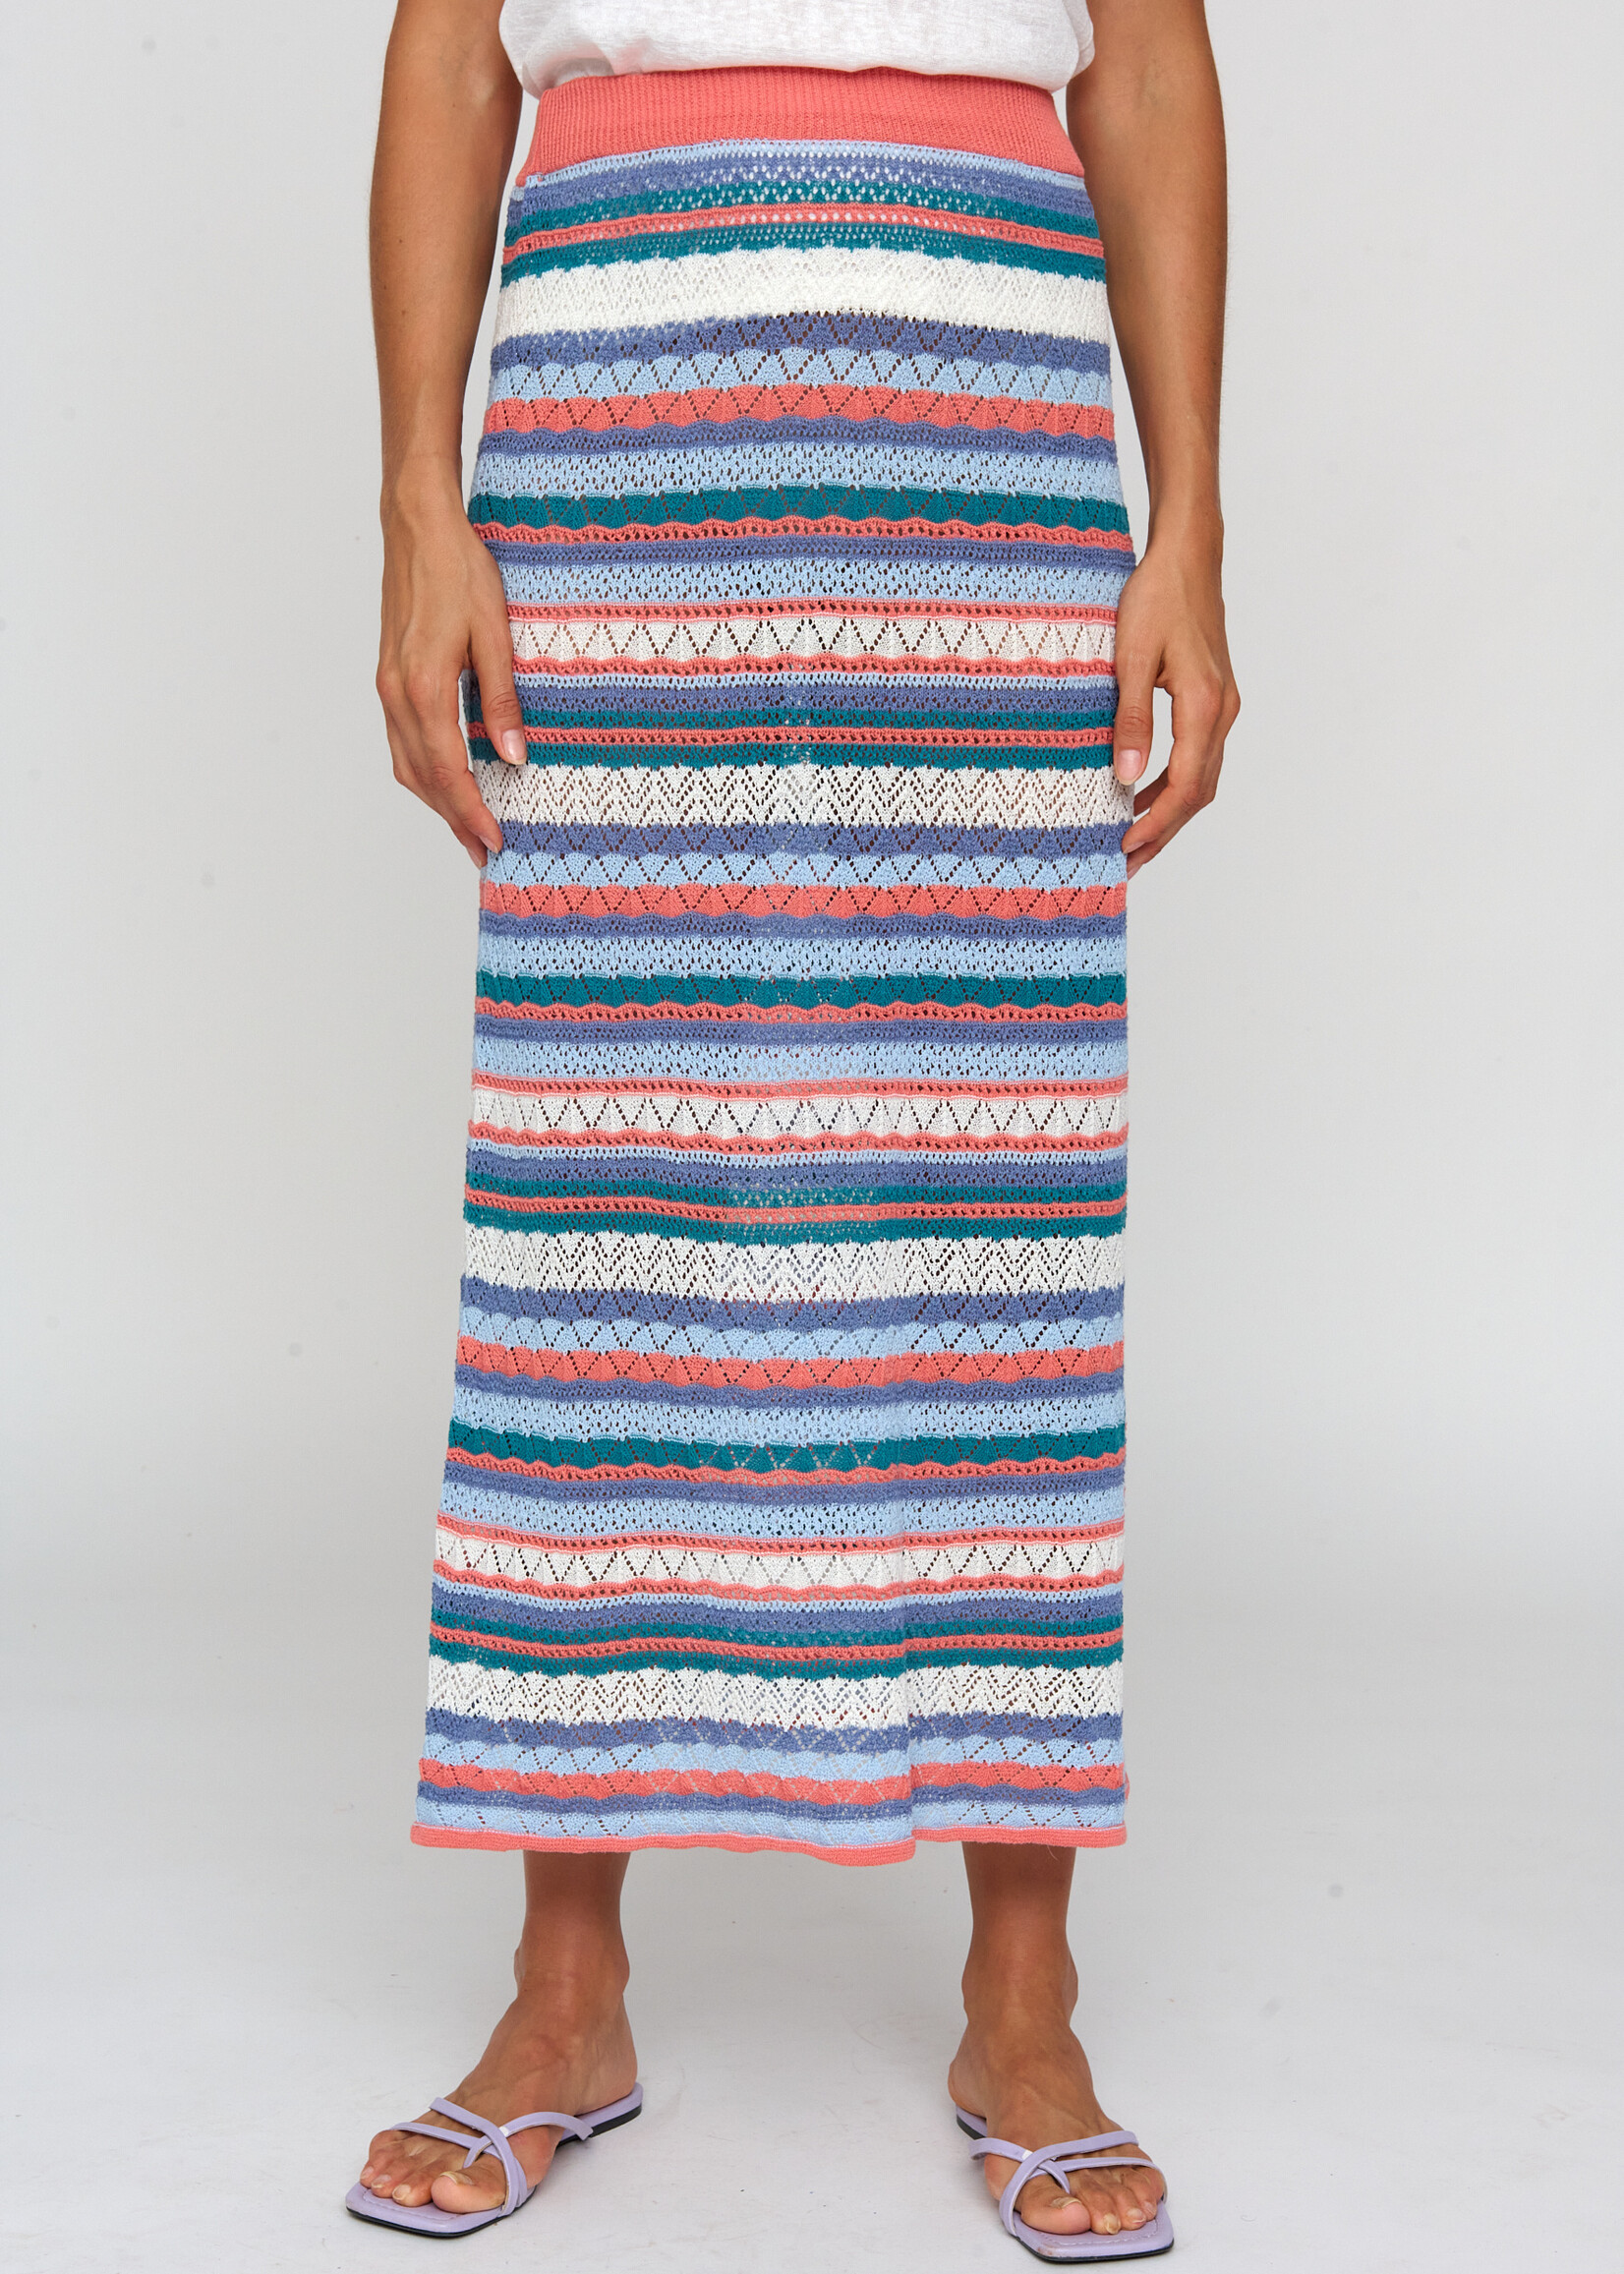 Tinta Tinta Oyon Striped Knit Skirt